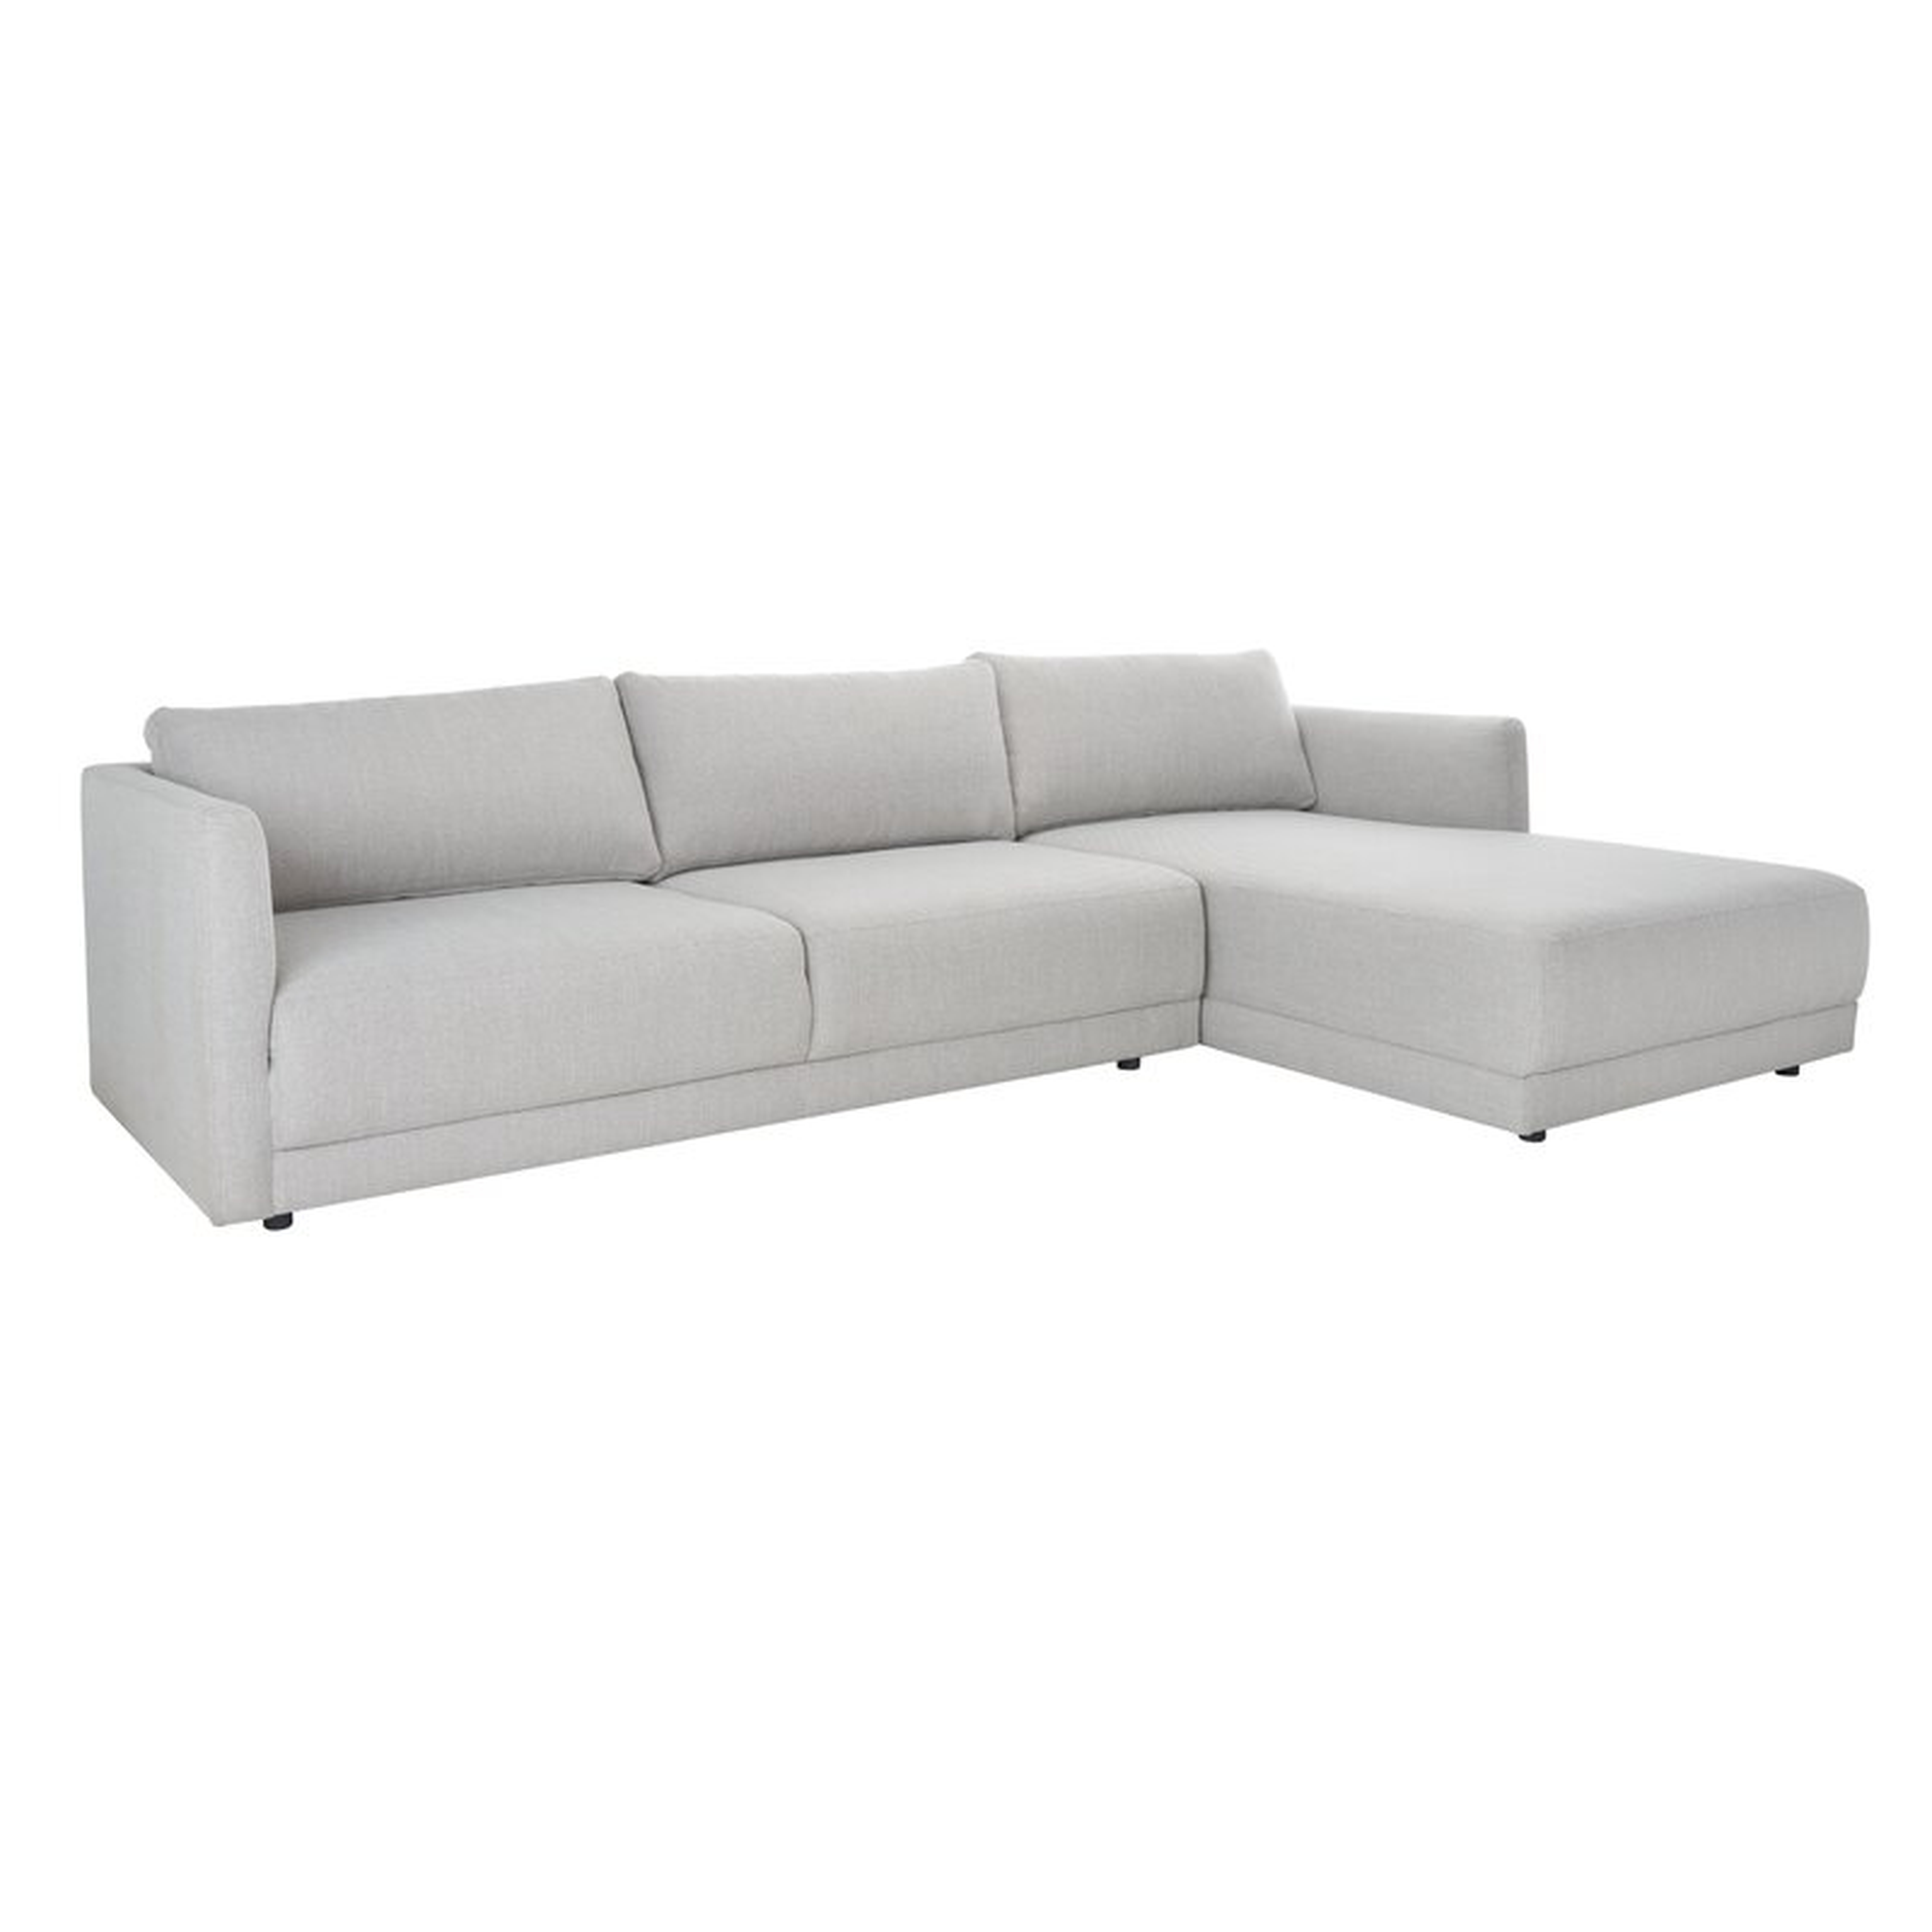 Kayden 117" Wide Right Hand Facing Sofa & Chaise, Light Gray Linen - Wayfair